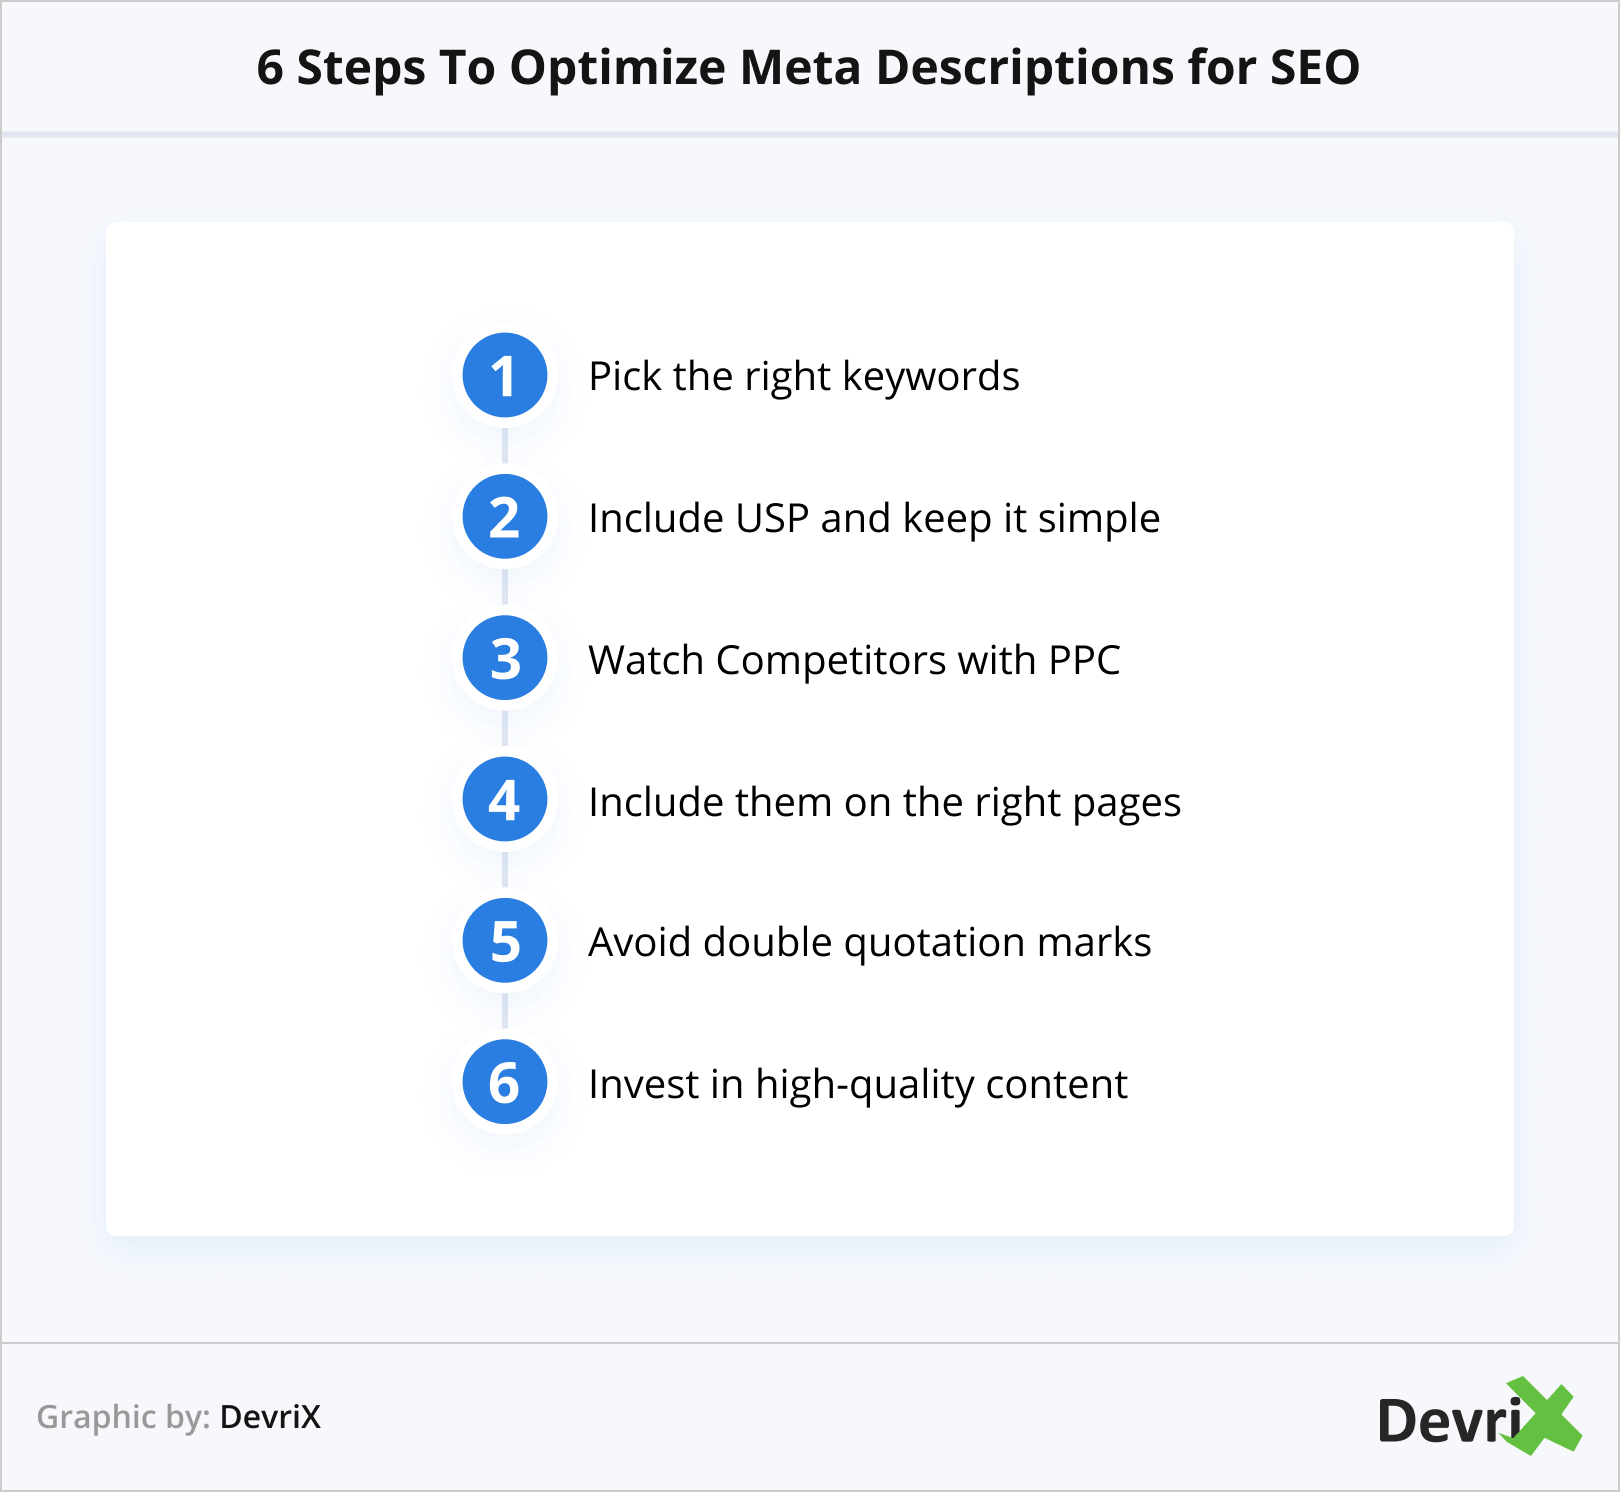 6 Steps To Optimize Meta Descriptions for SEO